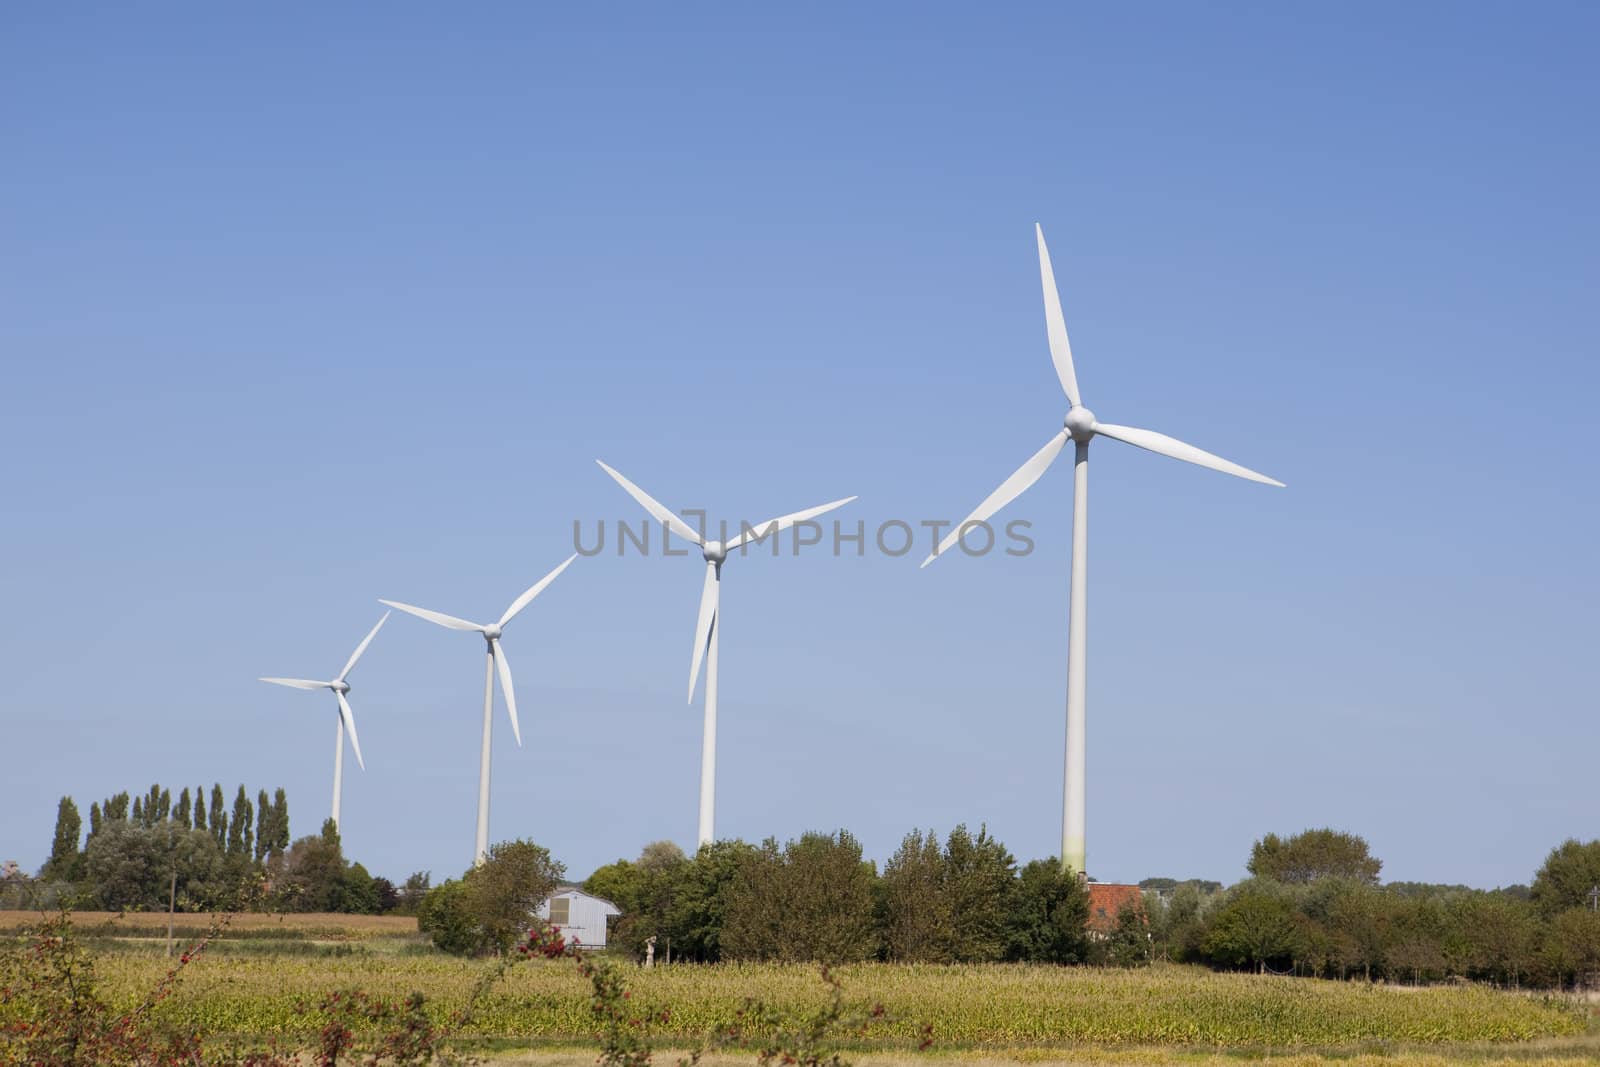 A row of wind turbines at a wind farm